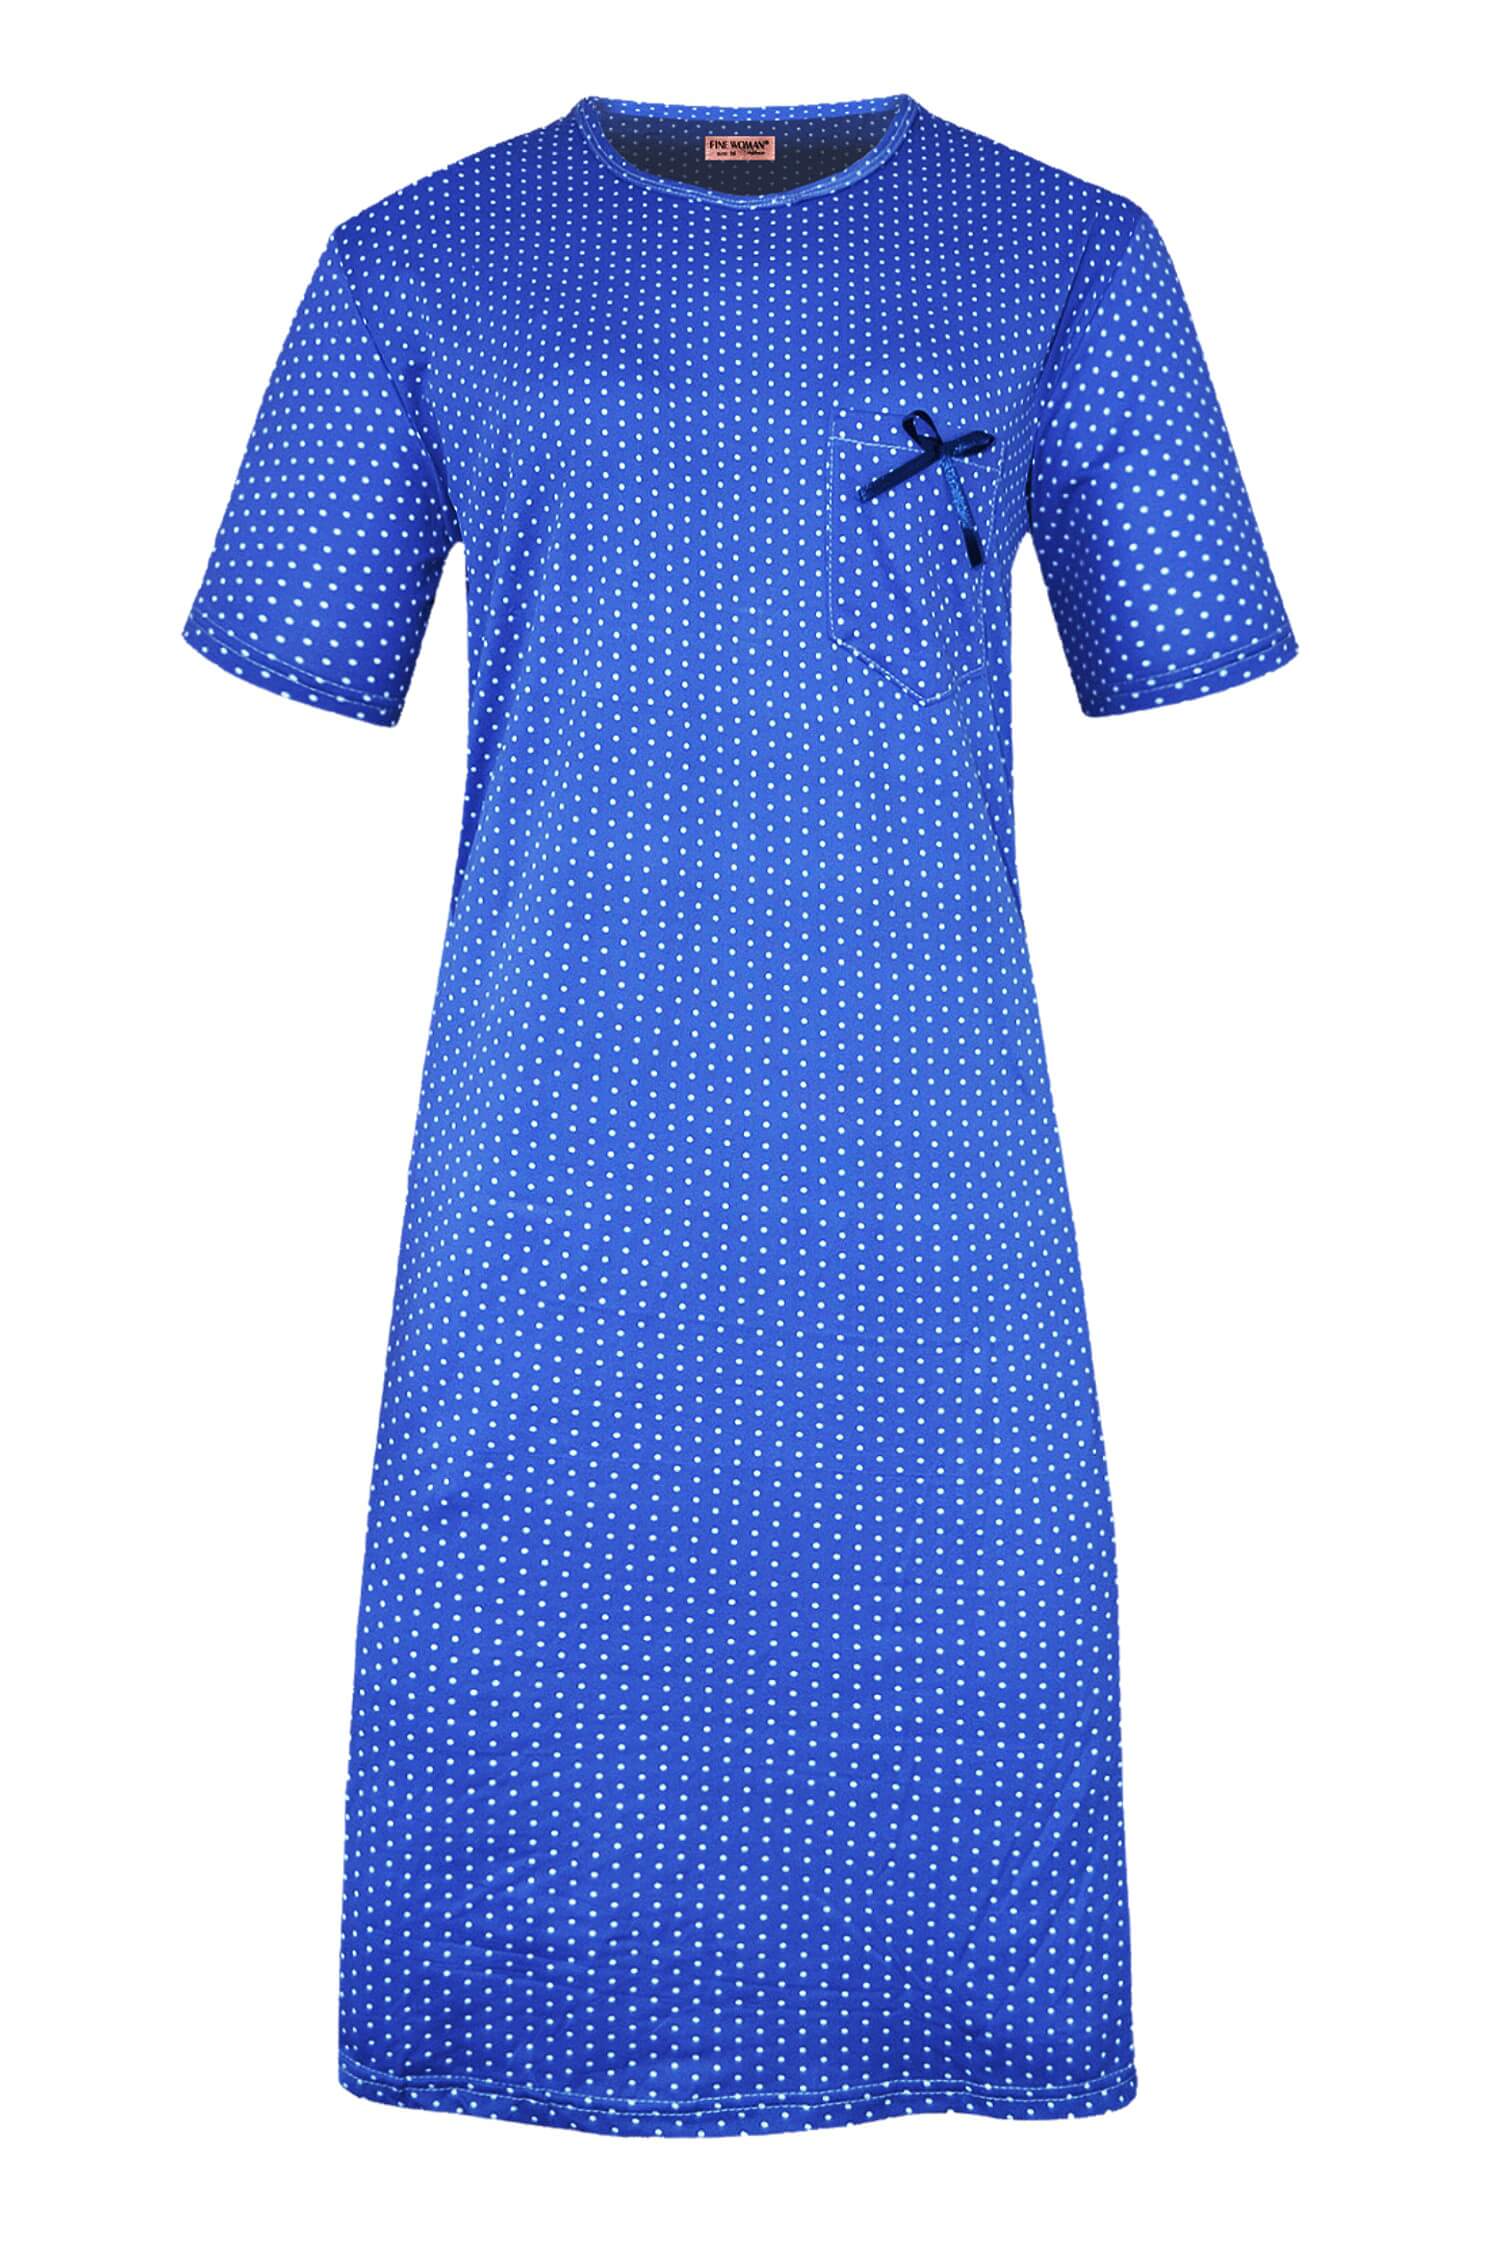 Monika dámská noční košile s puntíky 6533 XL tmavě modrá